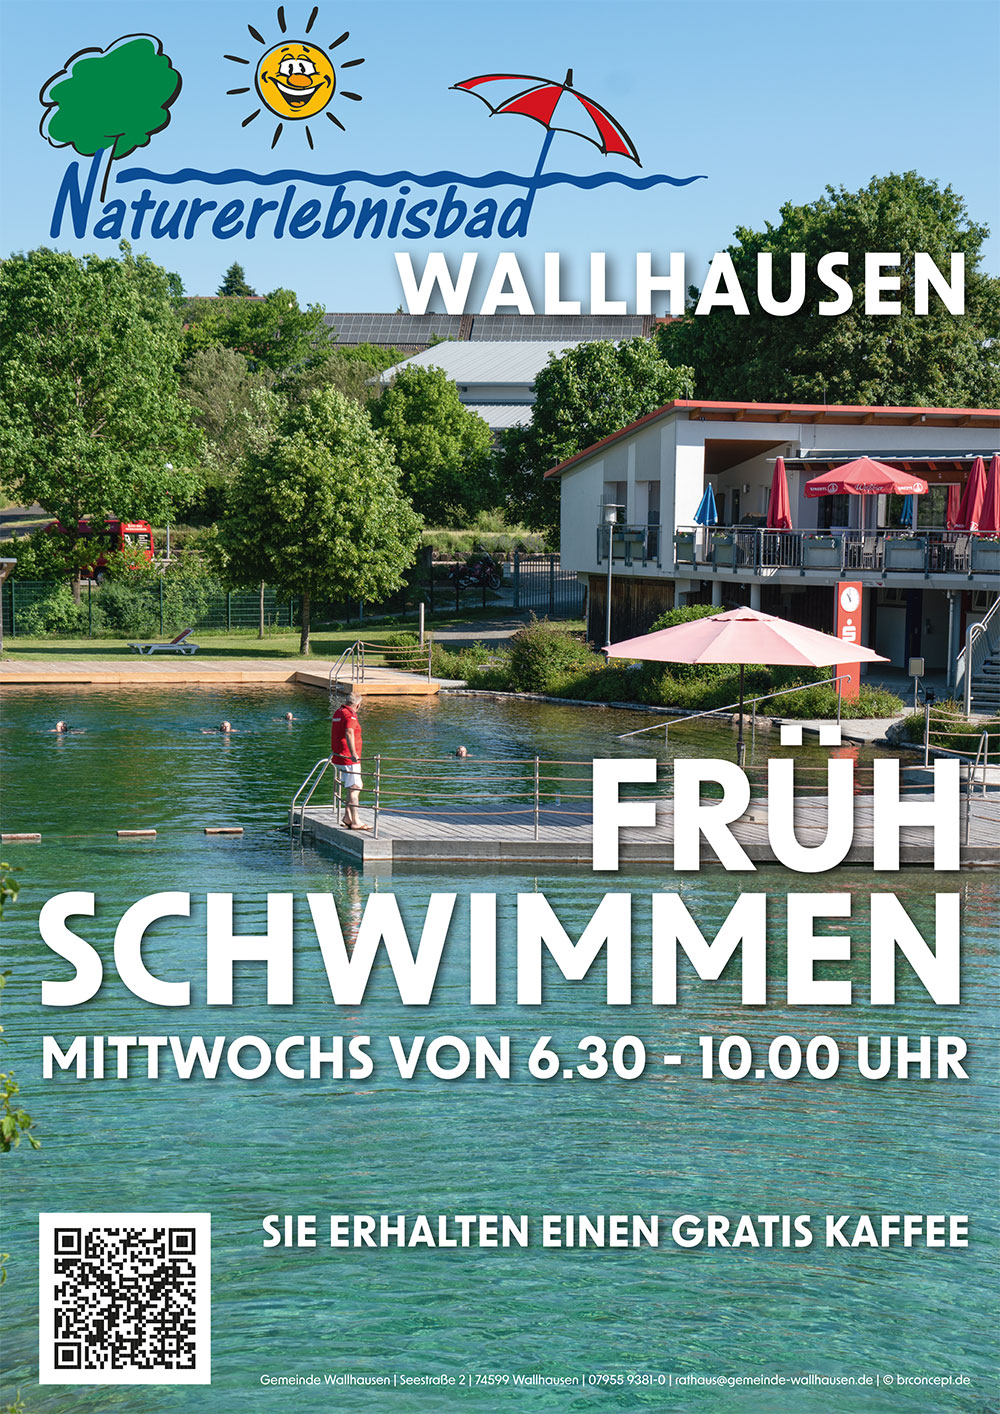 Naturerlebnisbad Wallhausen - Frühschwimmen